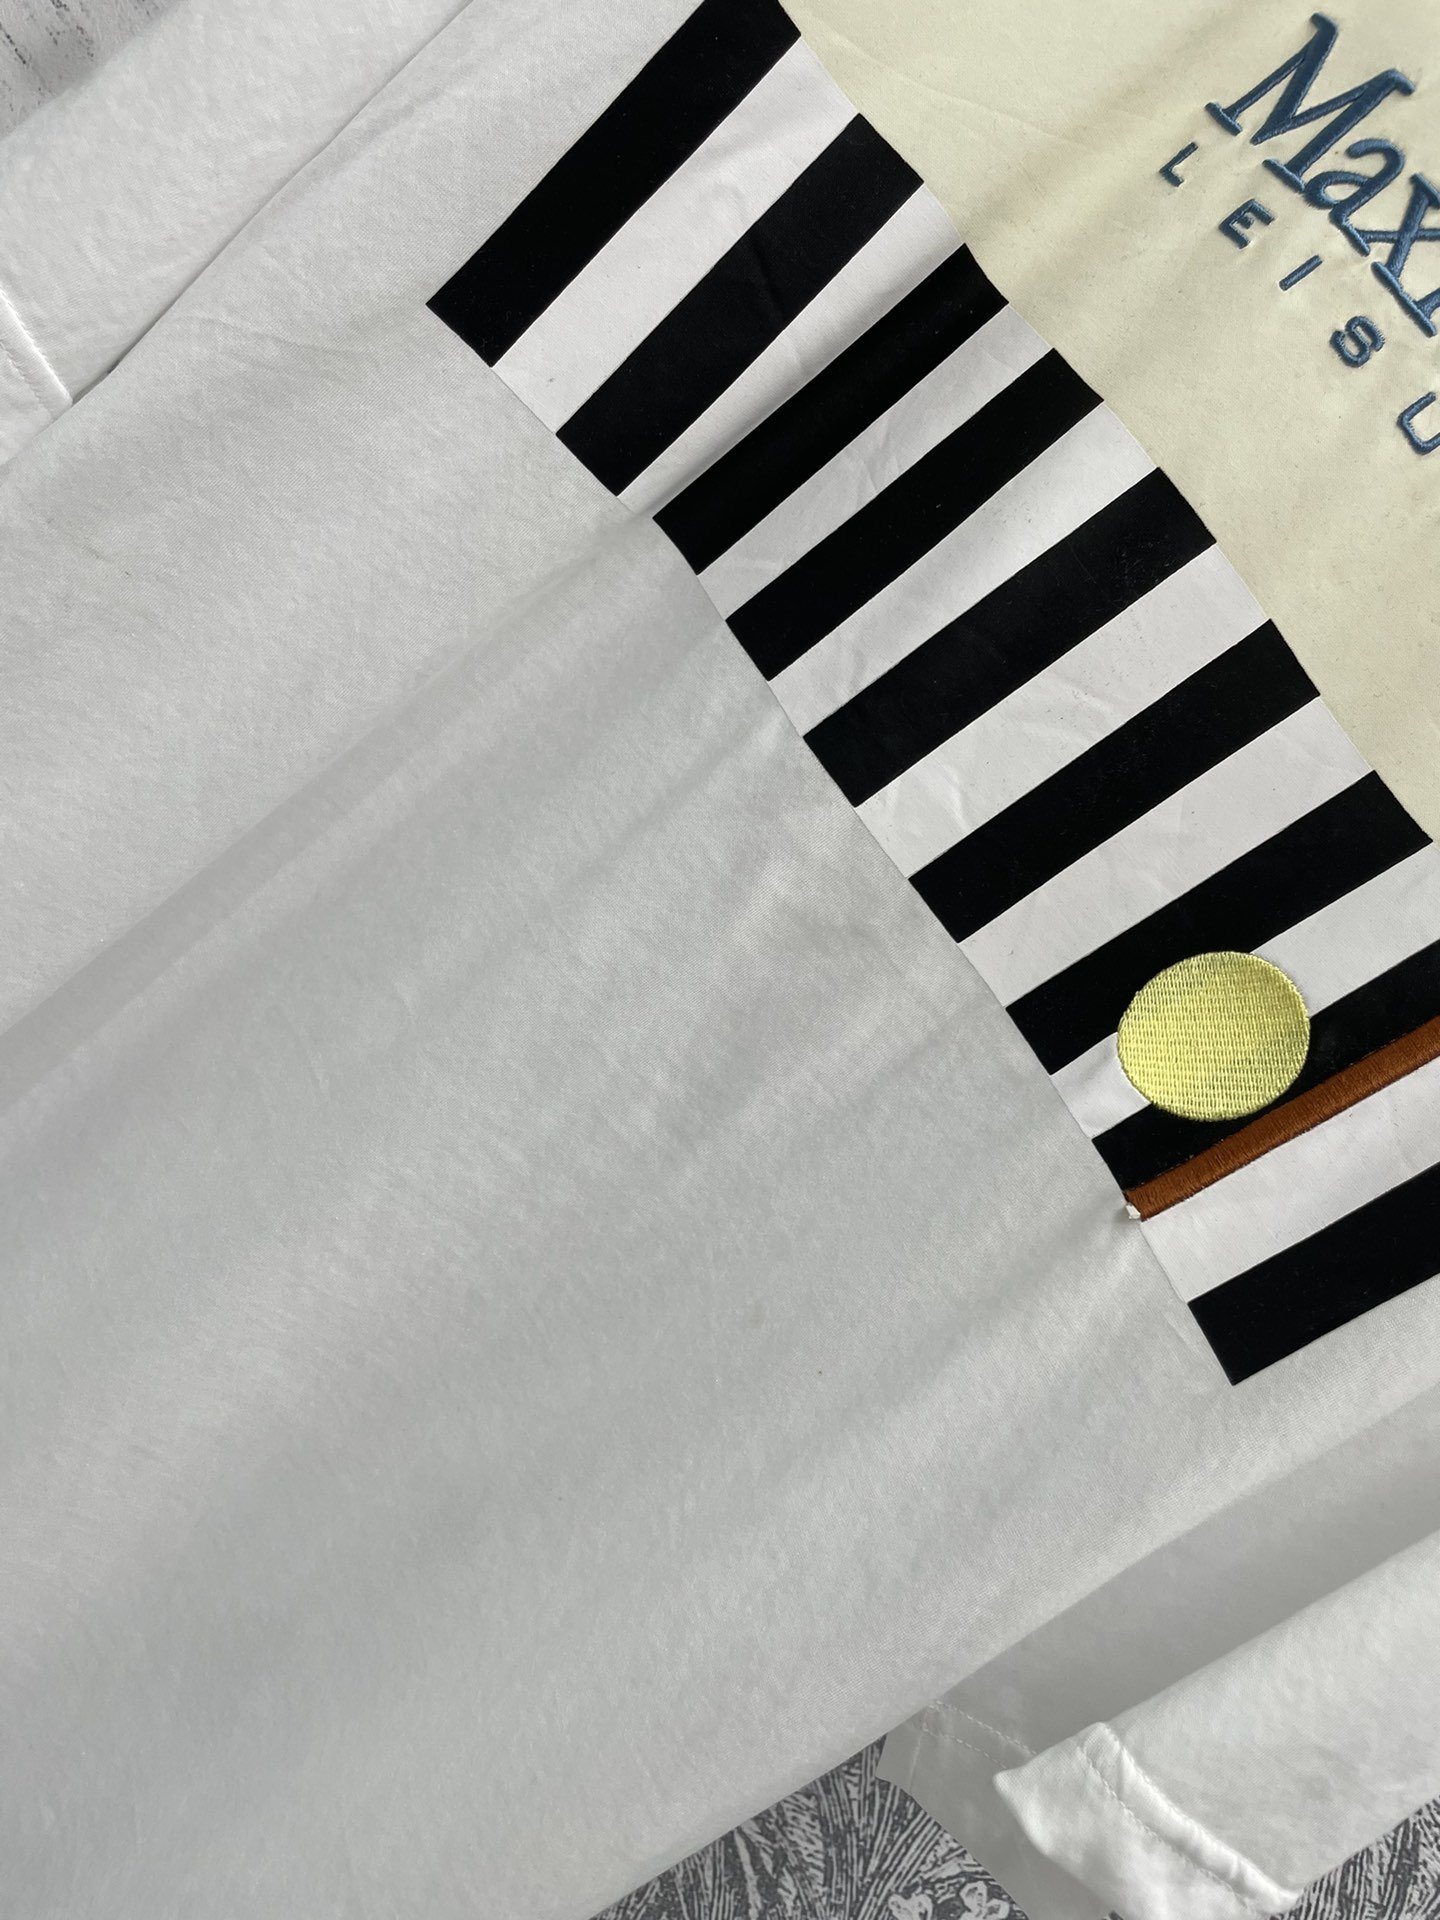 M家24新款黑白字母logo拼色T恤超大版型钢琴键字母logo图案设计独特简约而不失时尚感男女同款让你轻